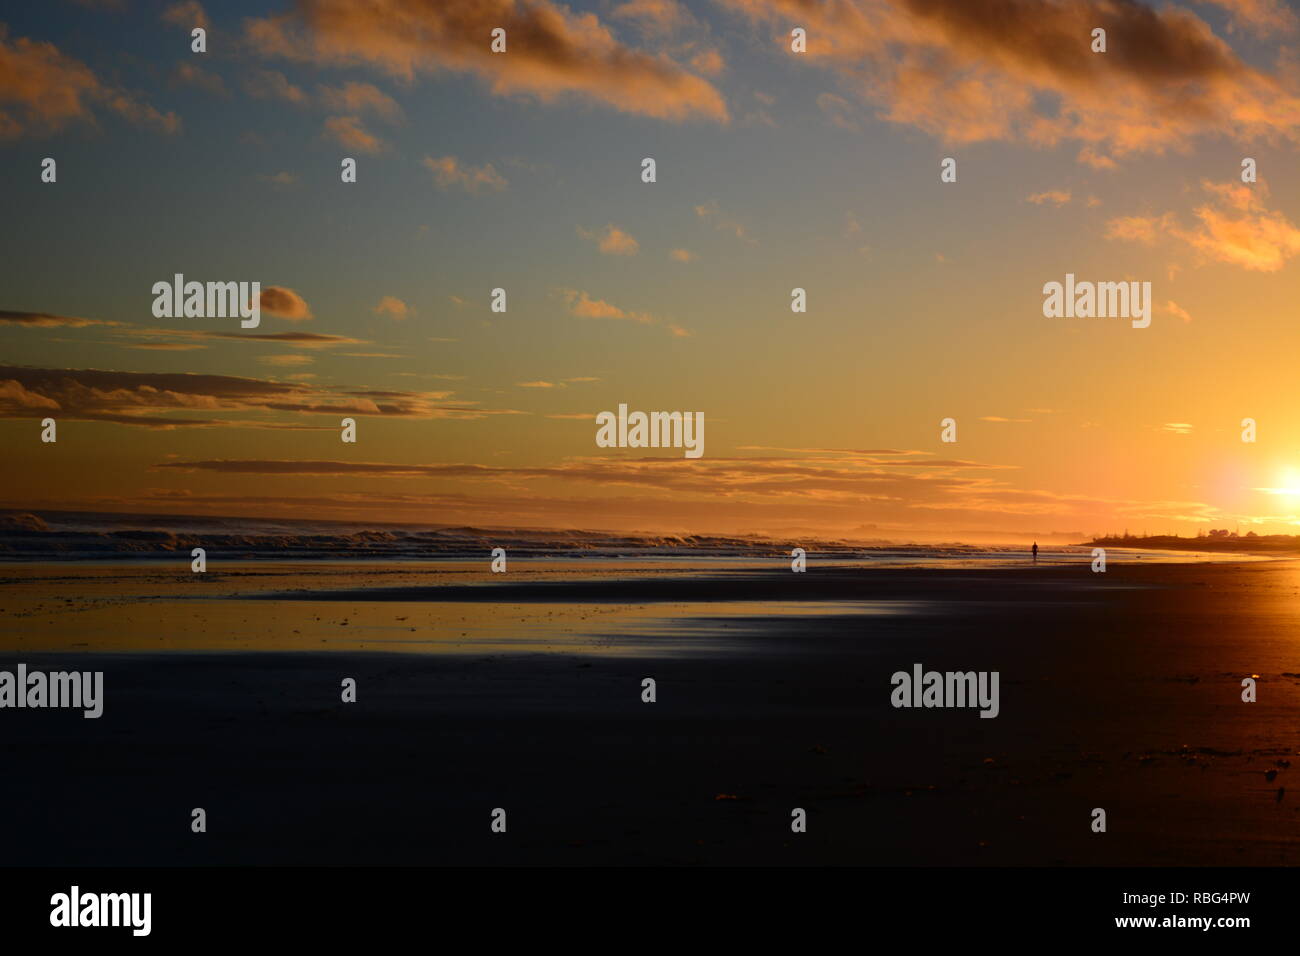 Dramatischer sonnenaufgang Farben; schönen Sonnenaufgang am Strand und eine einsame Figur einer Person zu Fuß am Strand entlang. Stockfoto